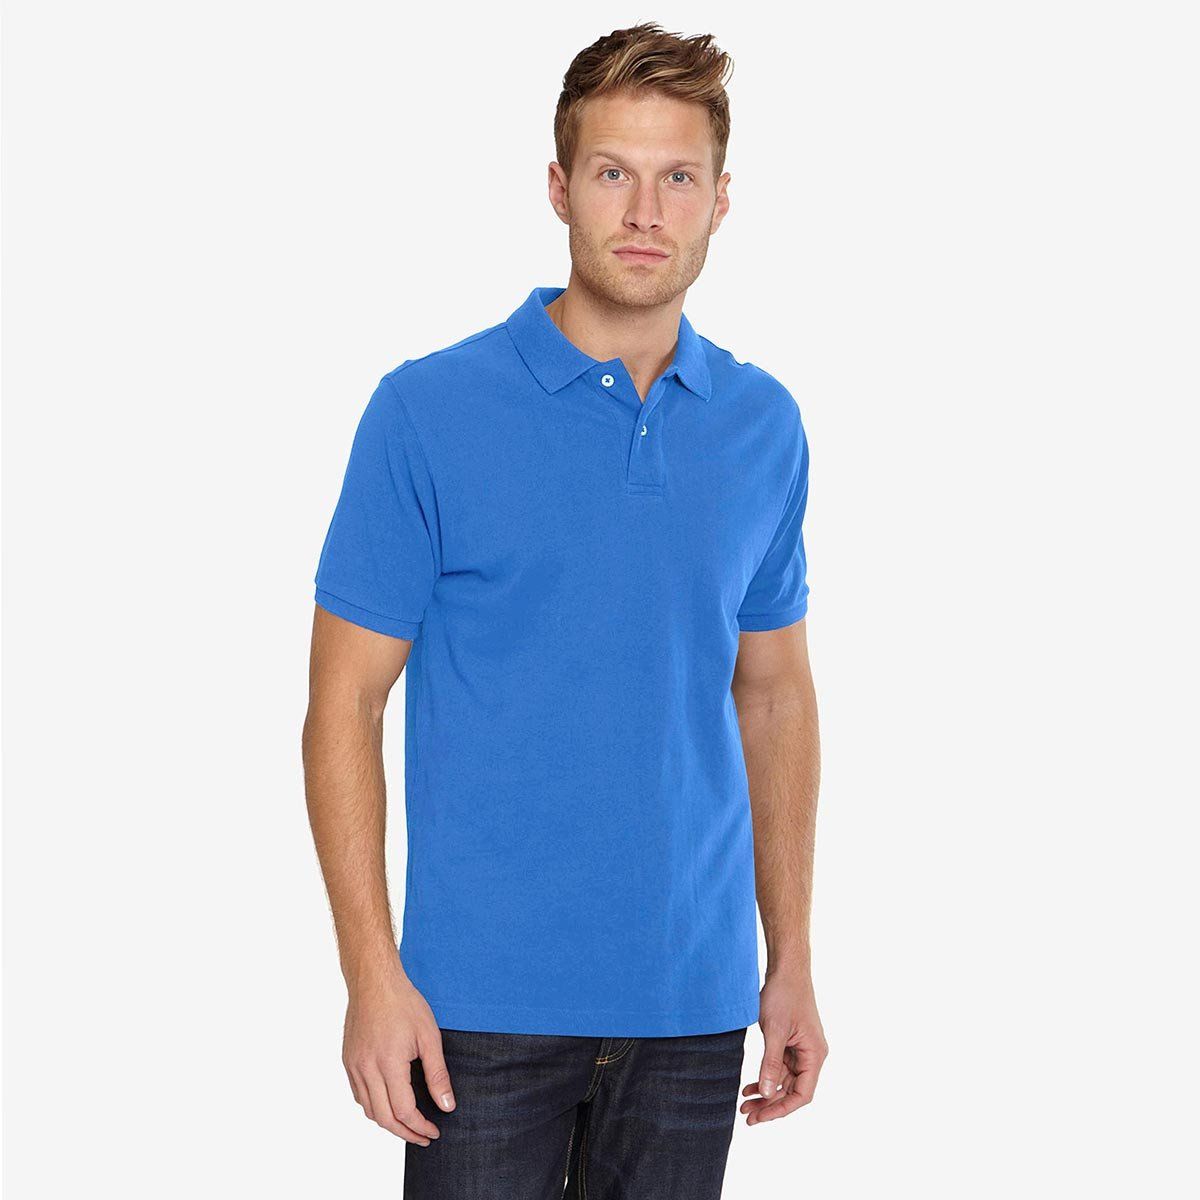 Totga Short Sleeve B Quality Polo Shirt001 B Quality Image Light Blue L 